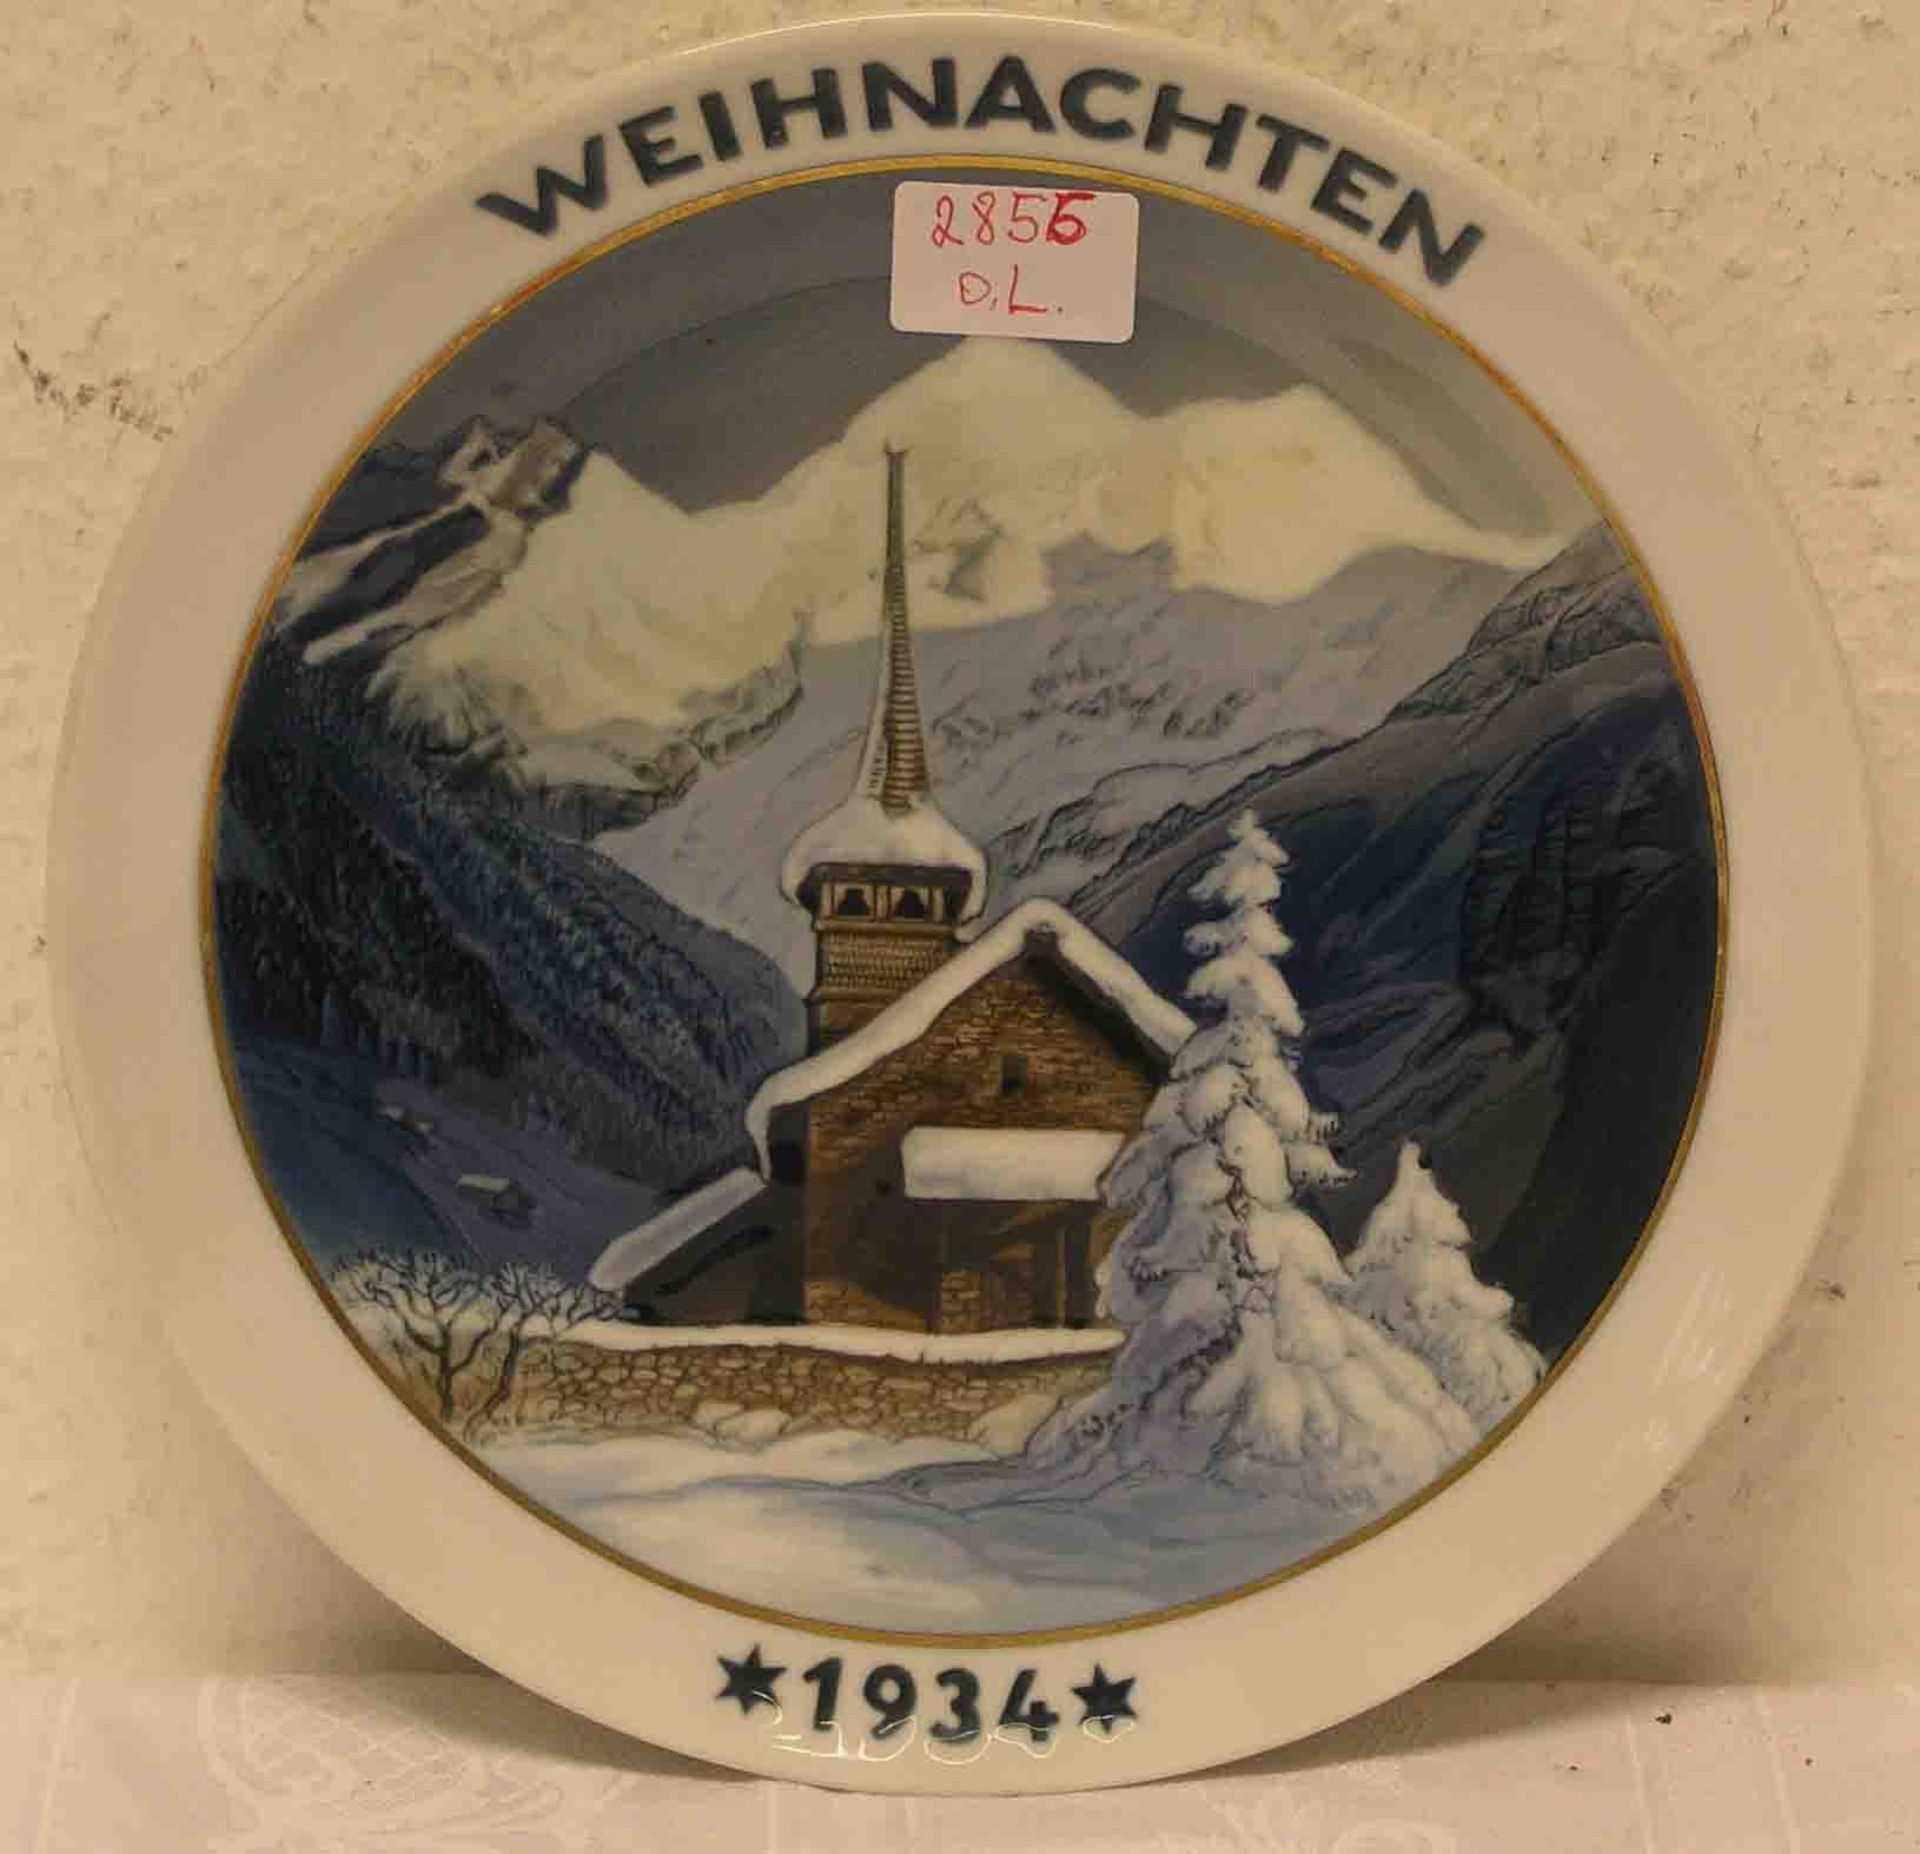 Weihnachten 1934. Rosenthal Porzellanteller. Durchmesser: 21cm.